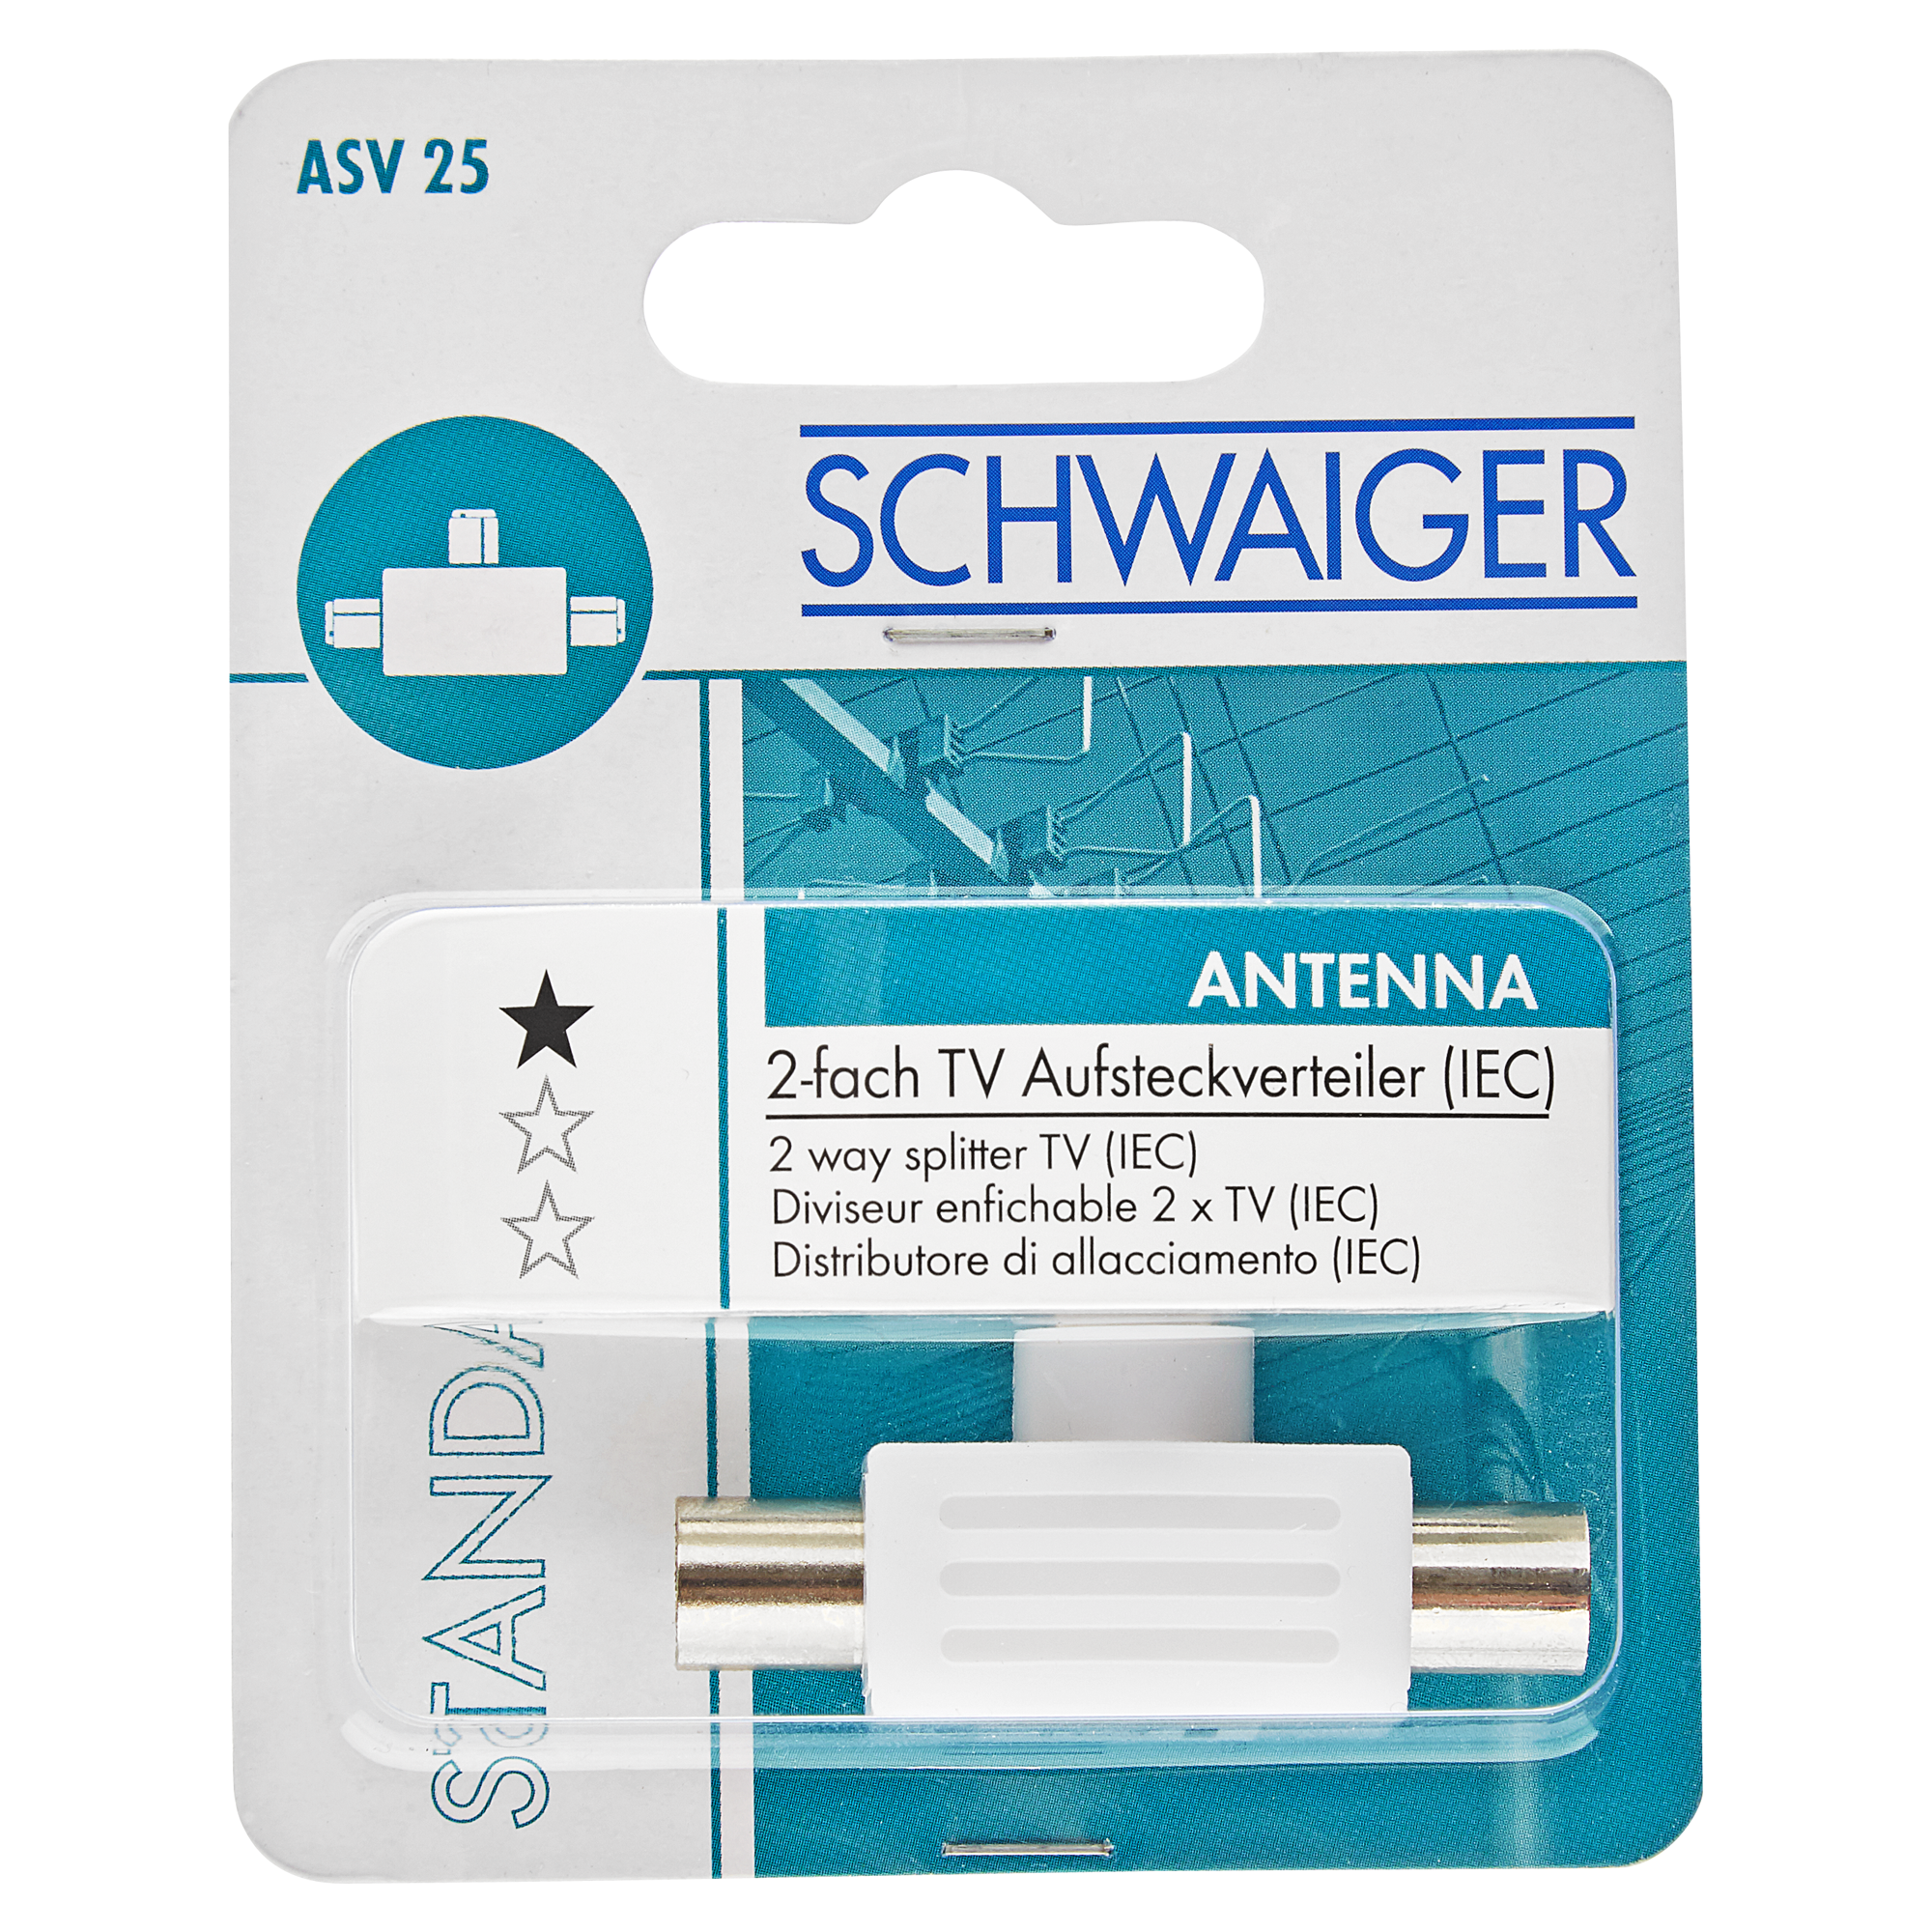 IEC-Aufsteckverteiler 2-fach TV "Antenna" Standard + product picture